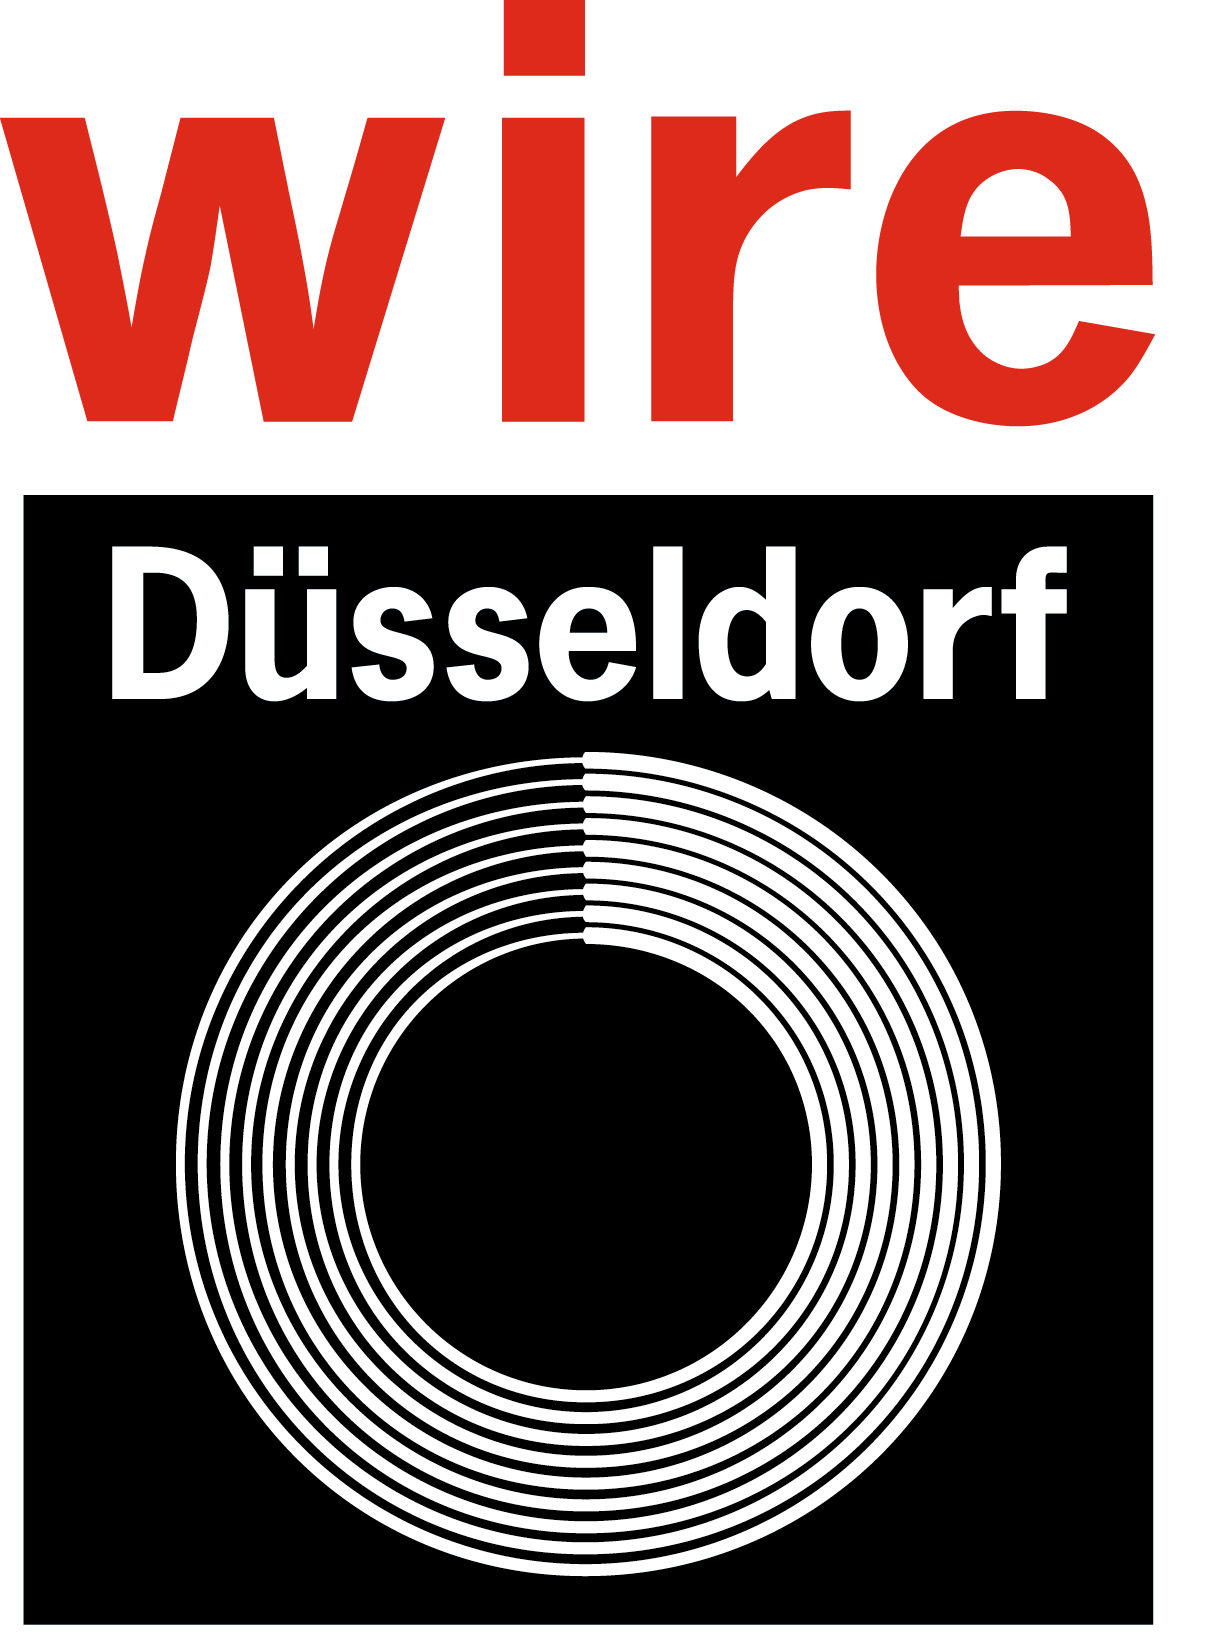 We're at Wire Show/Düsseldorf!